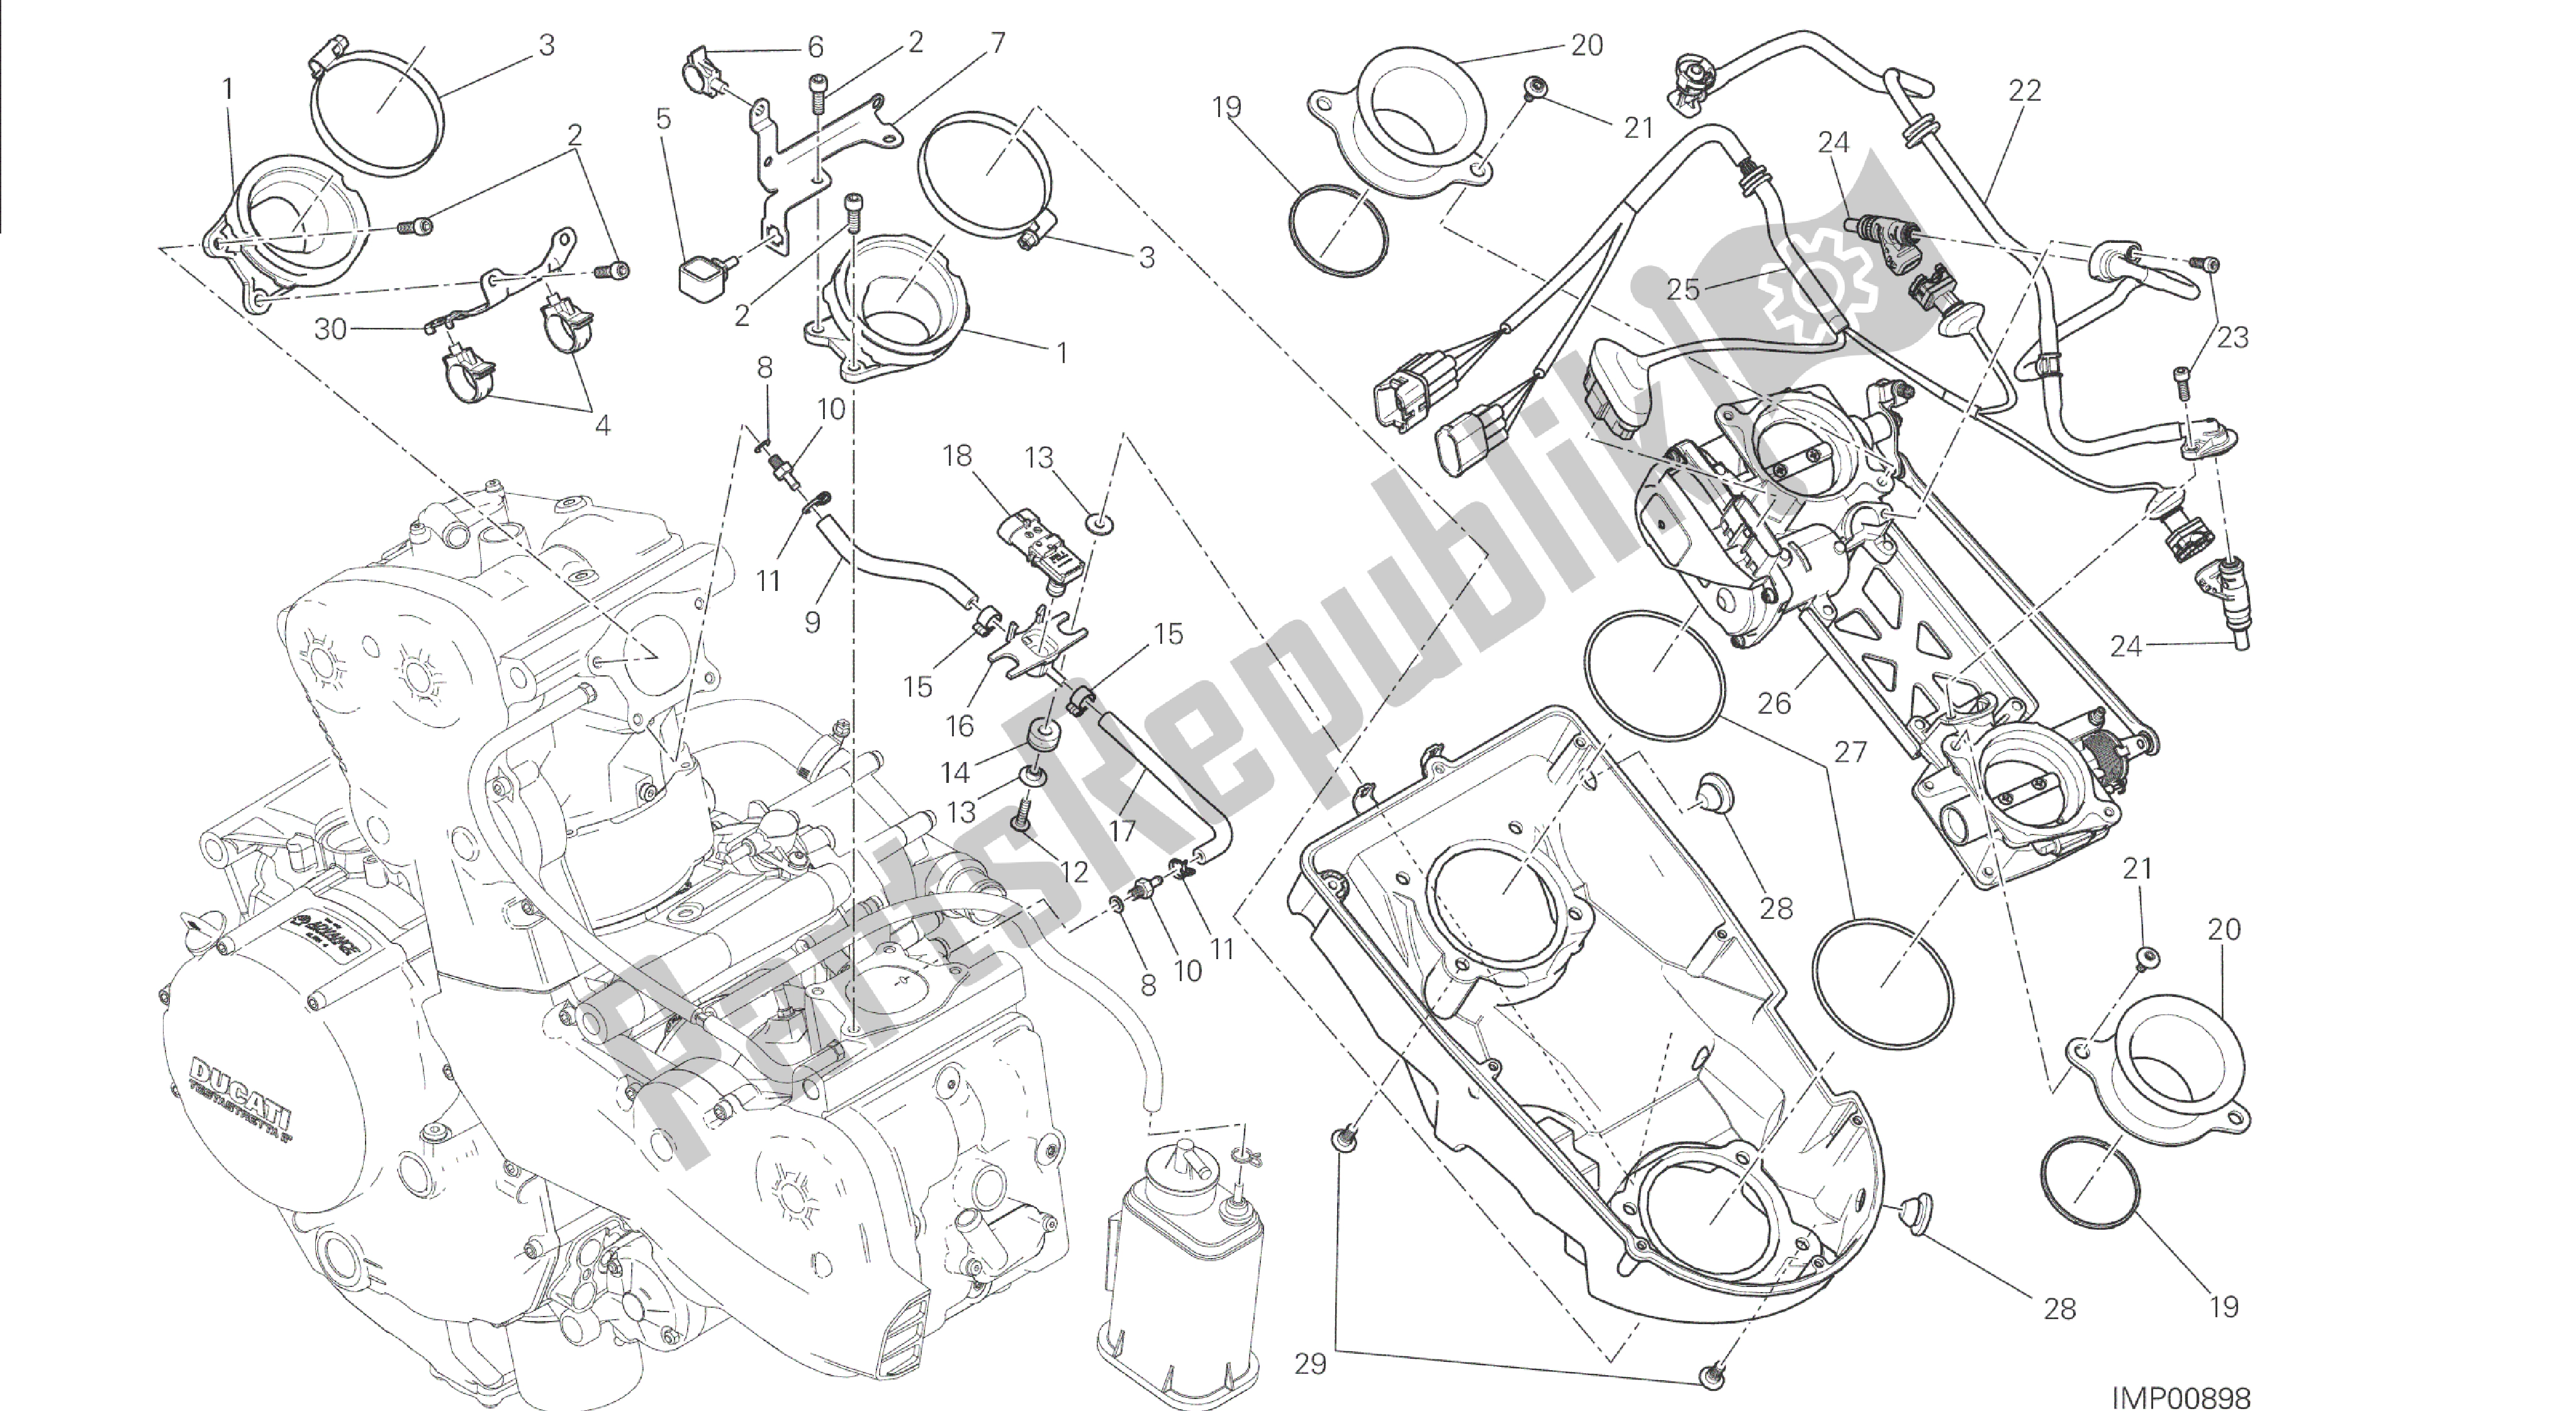 Alle onderdelen voor de Tekening 017 - Gasklephuis [mod: M 1200s; Xst: Chn] Groepsframe van de Ducati Monster S 1200 2014